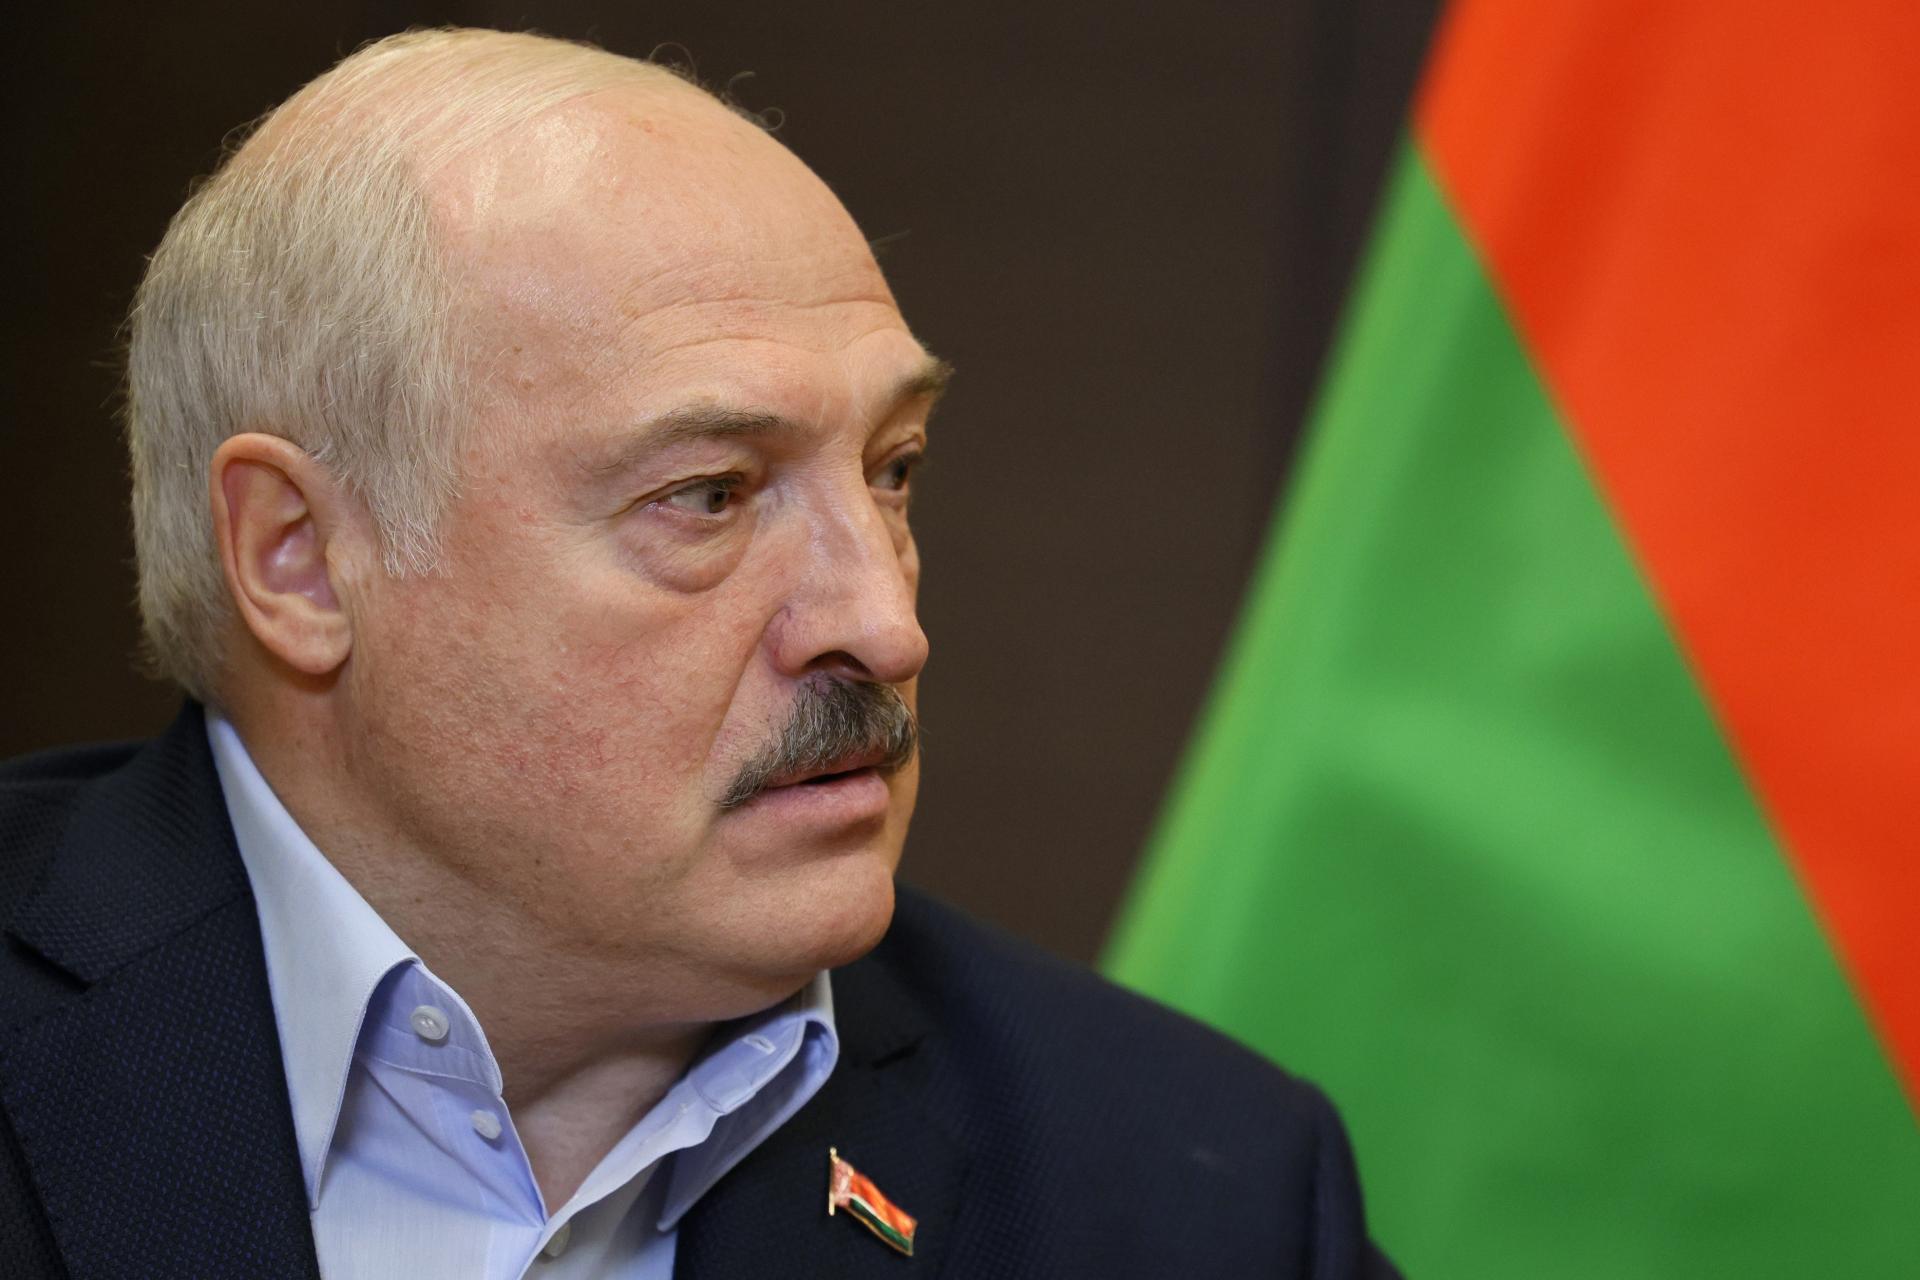 Nech si utekajú, treba sa rozhodnúť, čo s nimi. Lukašenko odsúdil utekajúcich pred mobilizáciou v Rusku